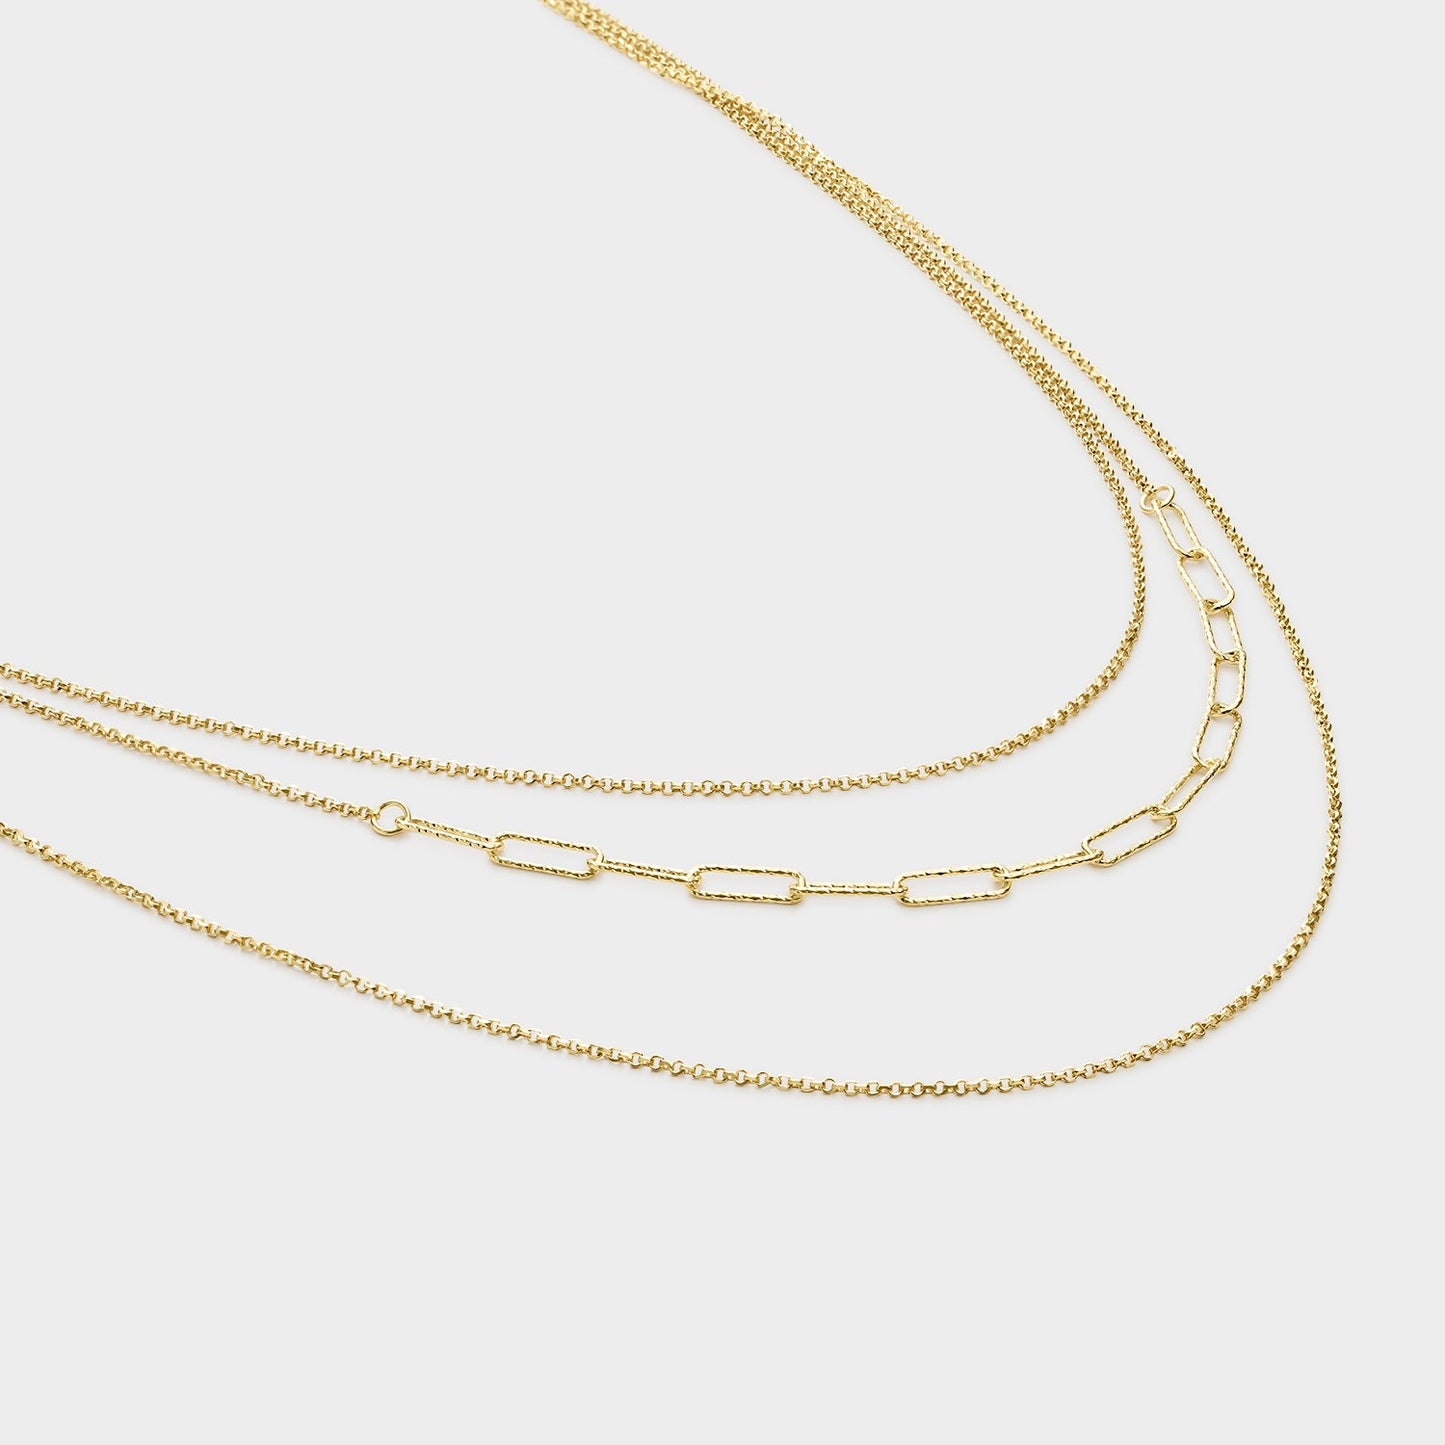 Collar triple texturizado de plata bañada en oro.